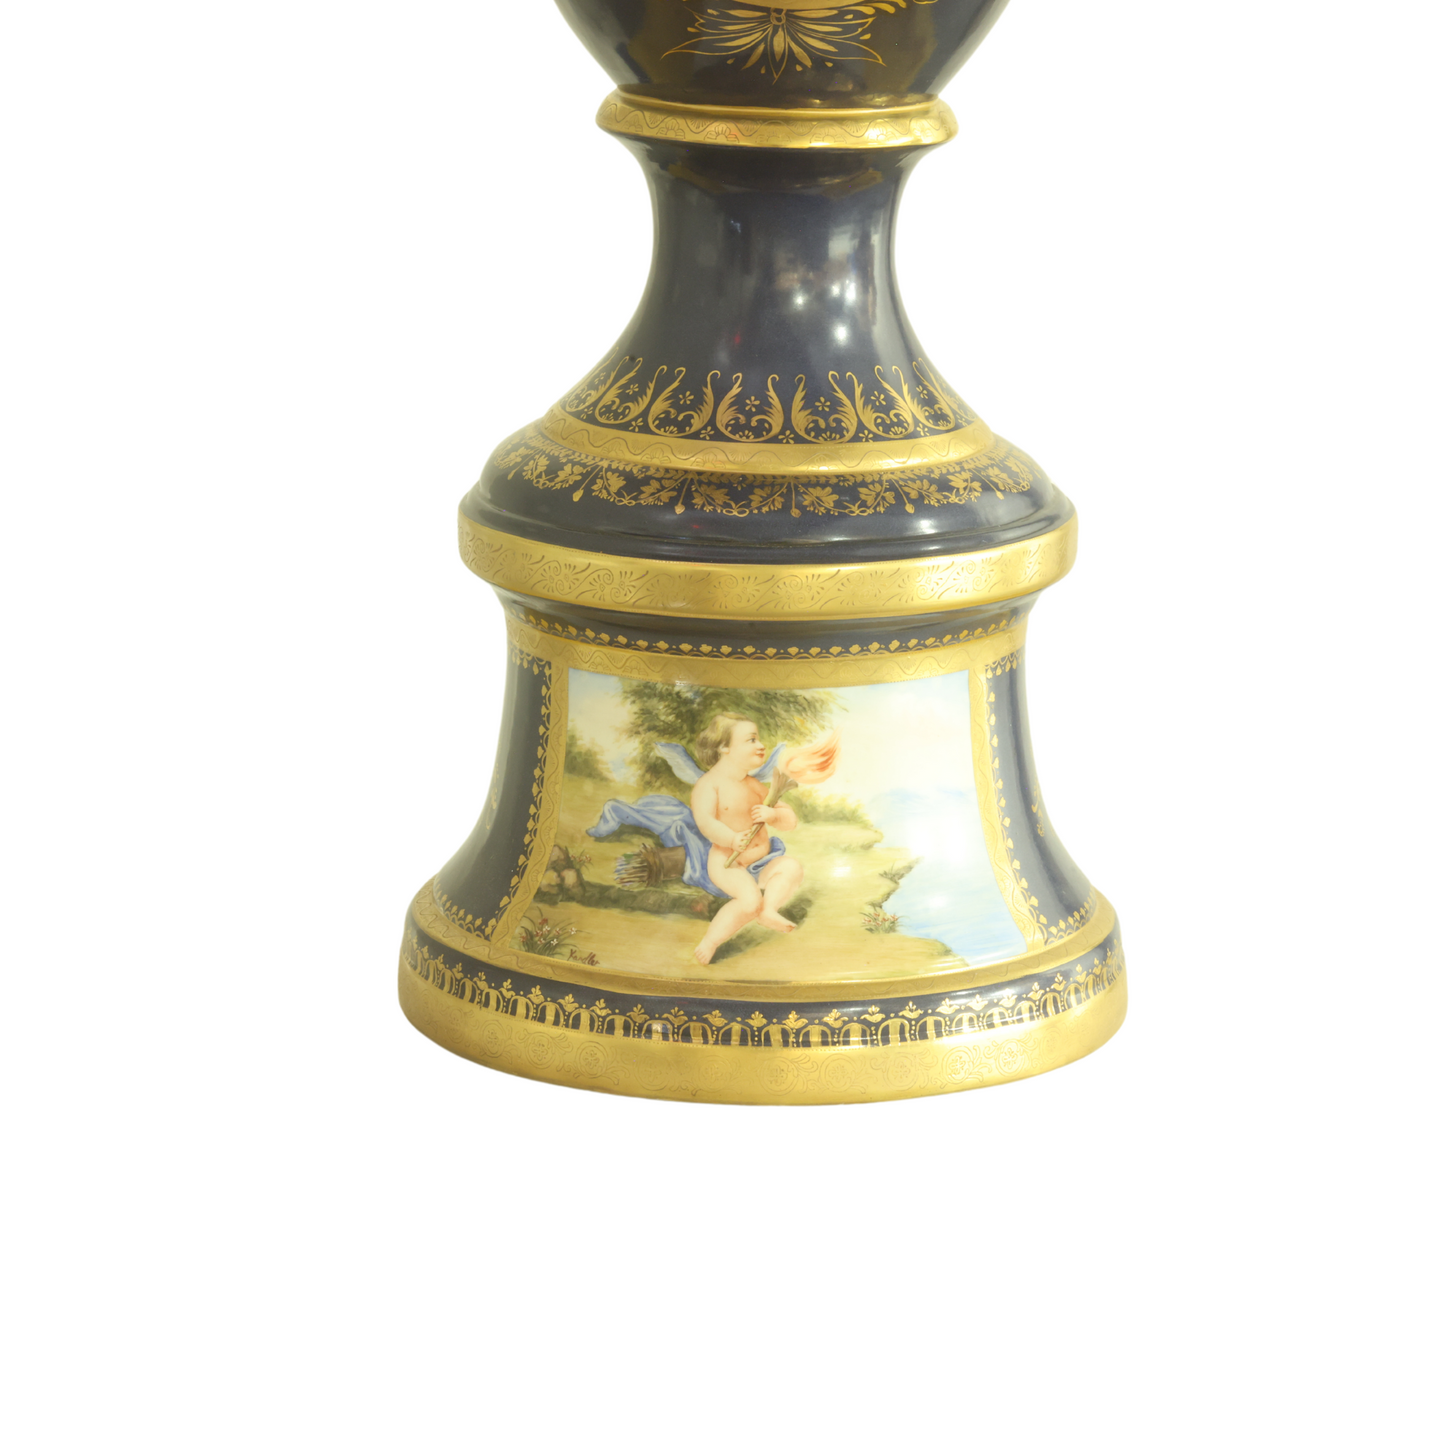 Mythological Hand-Painted Porcelain Vase